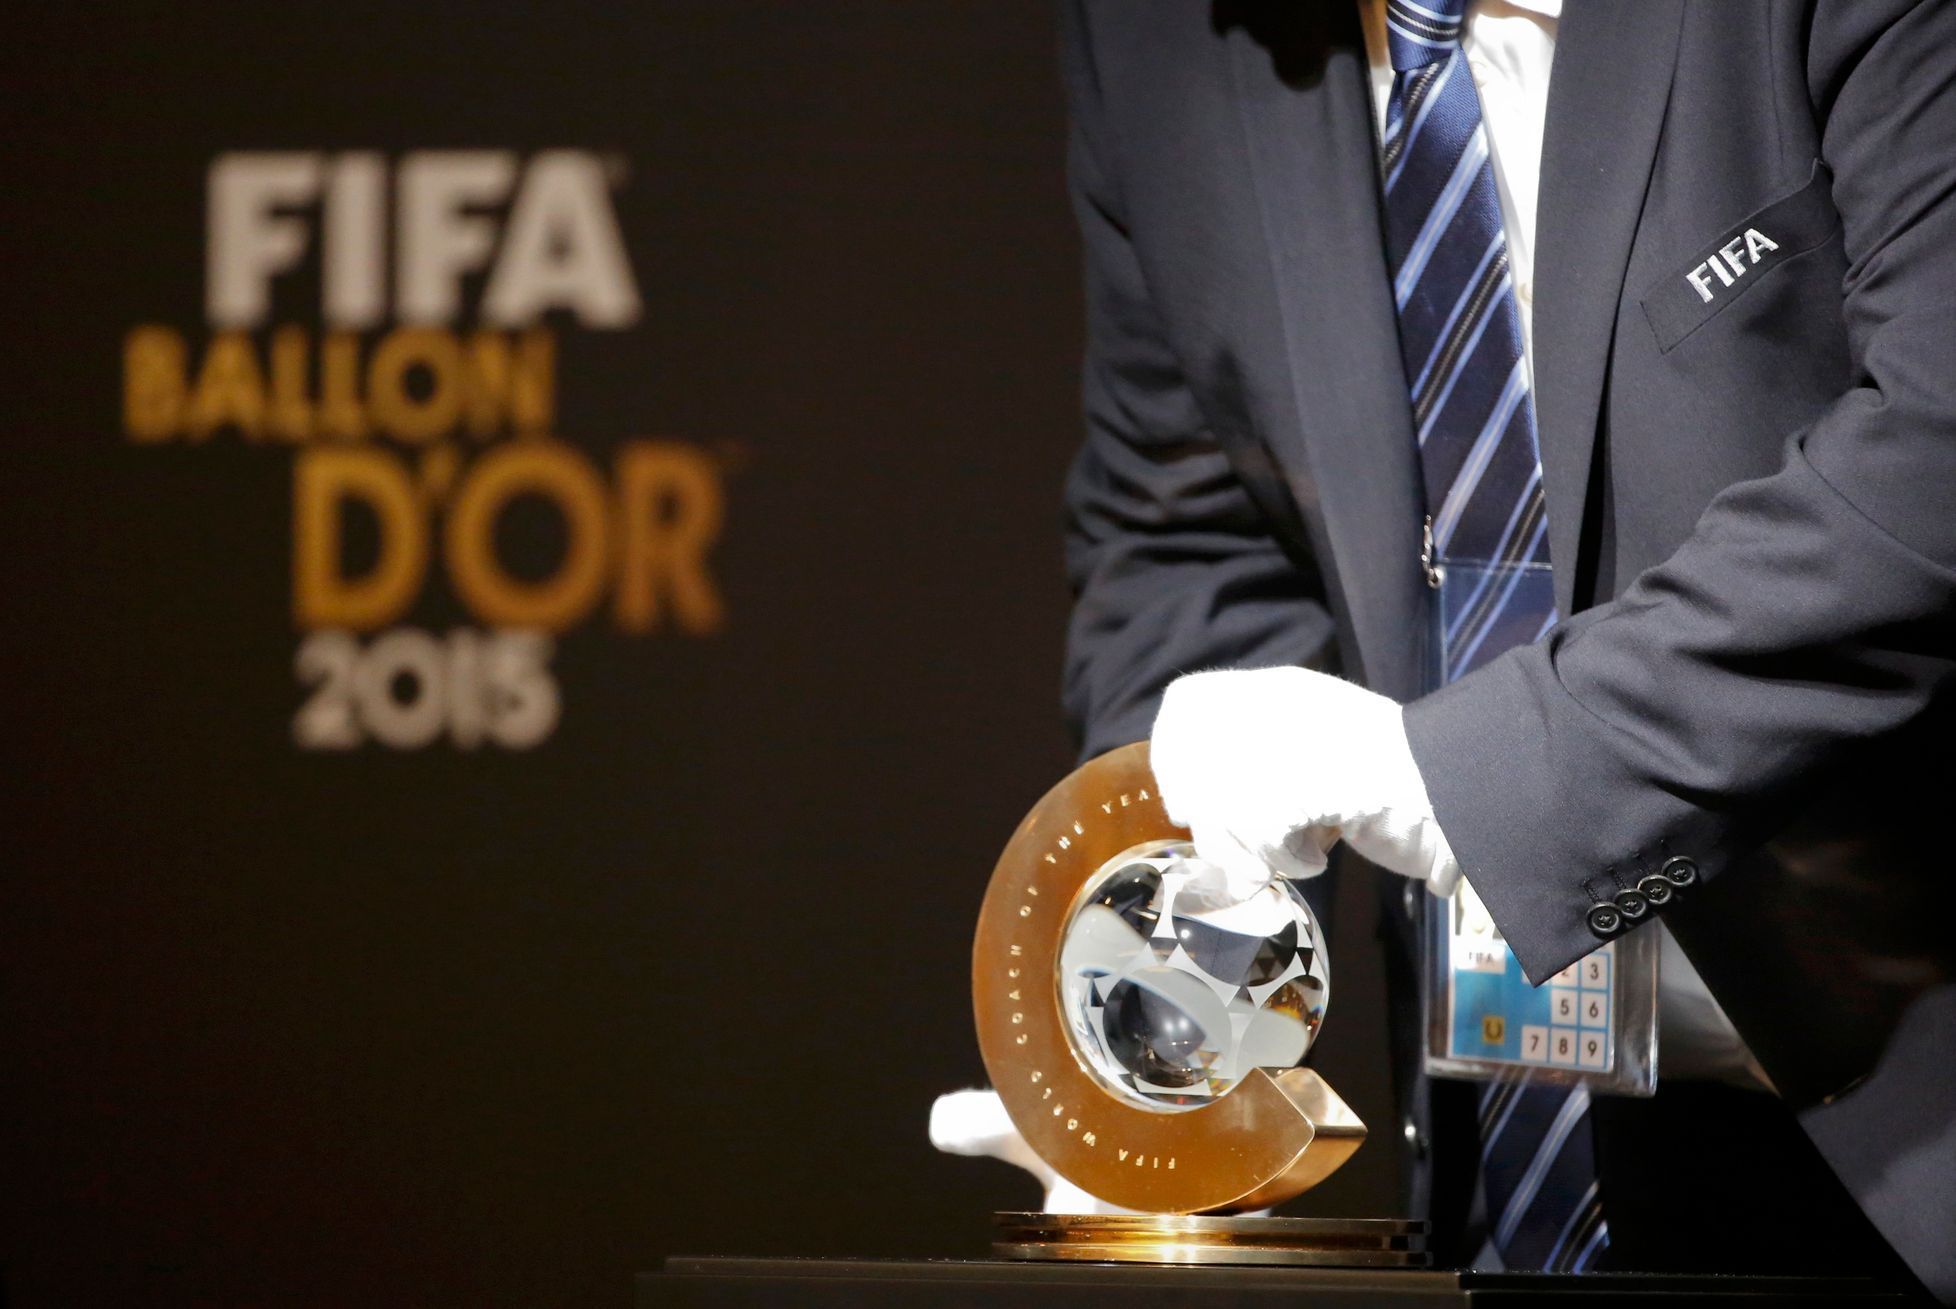 Zlatý míč FIFA 2015